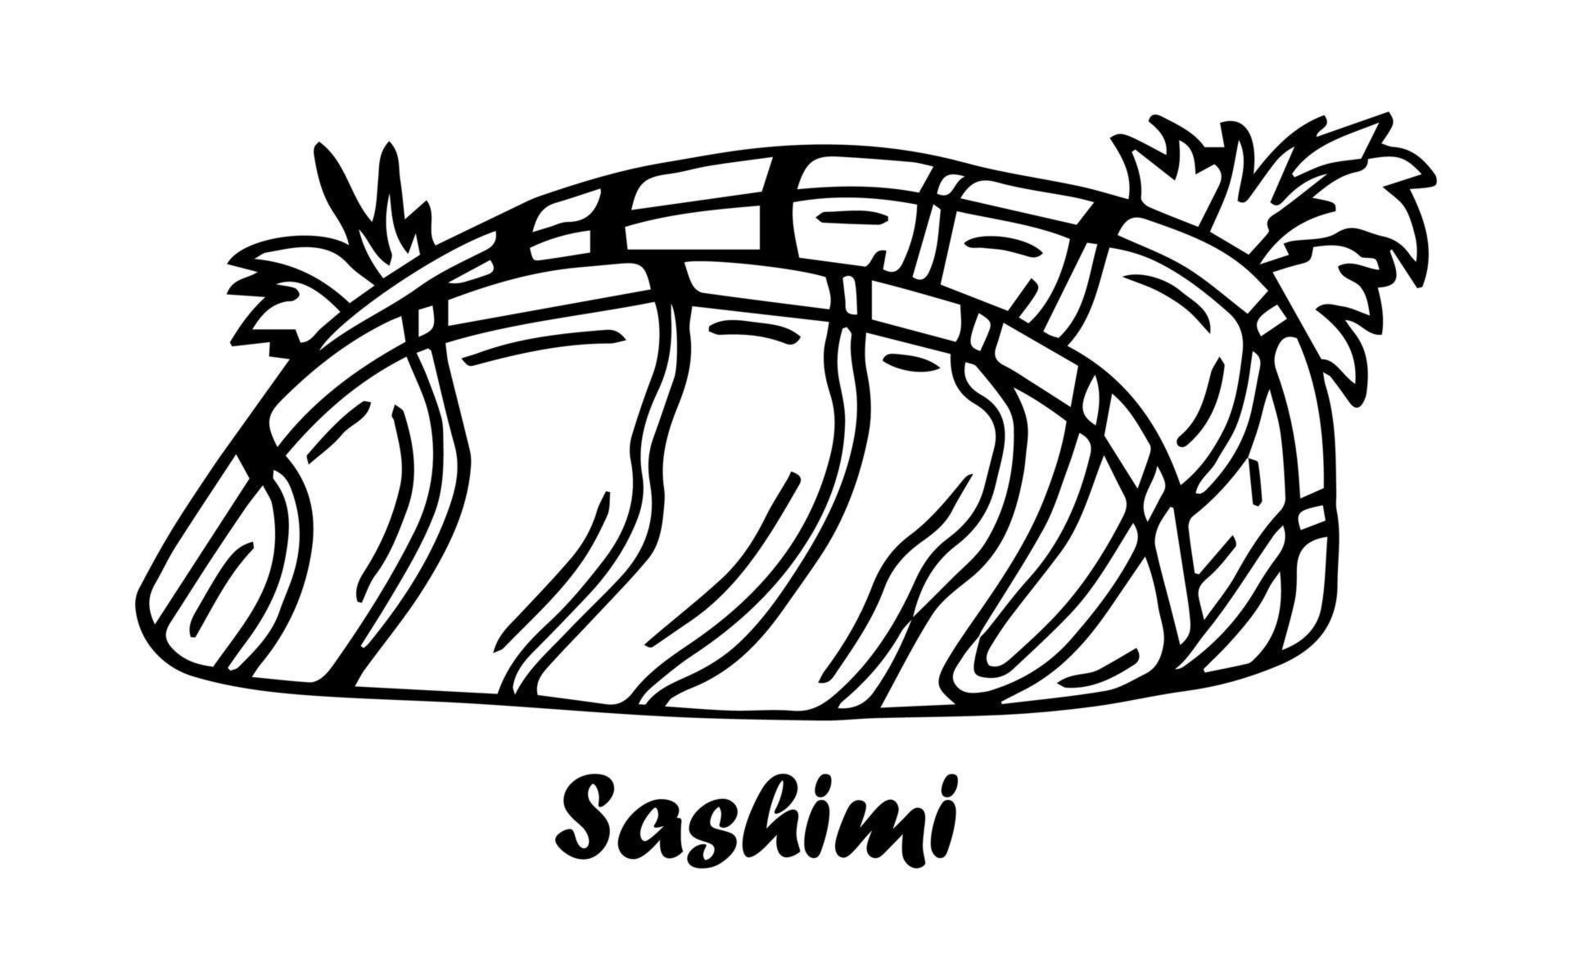 sashimi de salmão. ingrediente da culinária japonesa. vintage mão desenhada esboço gravura ilustração vetorial. vetor